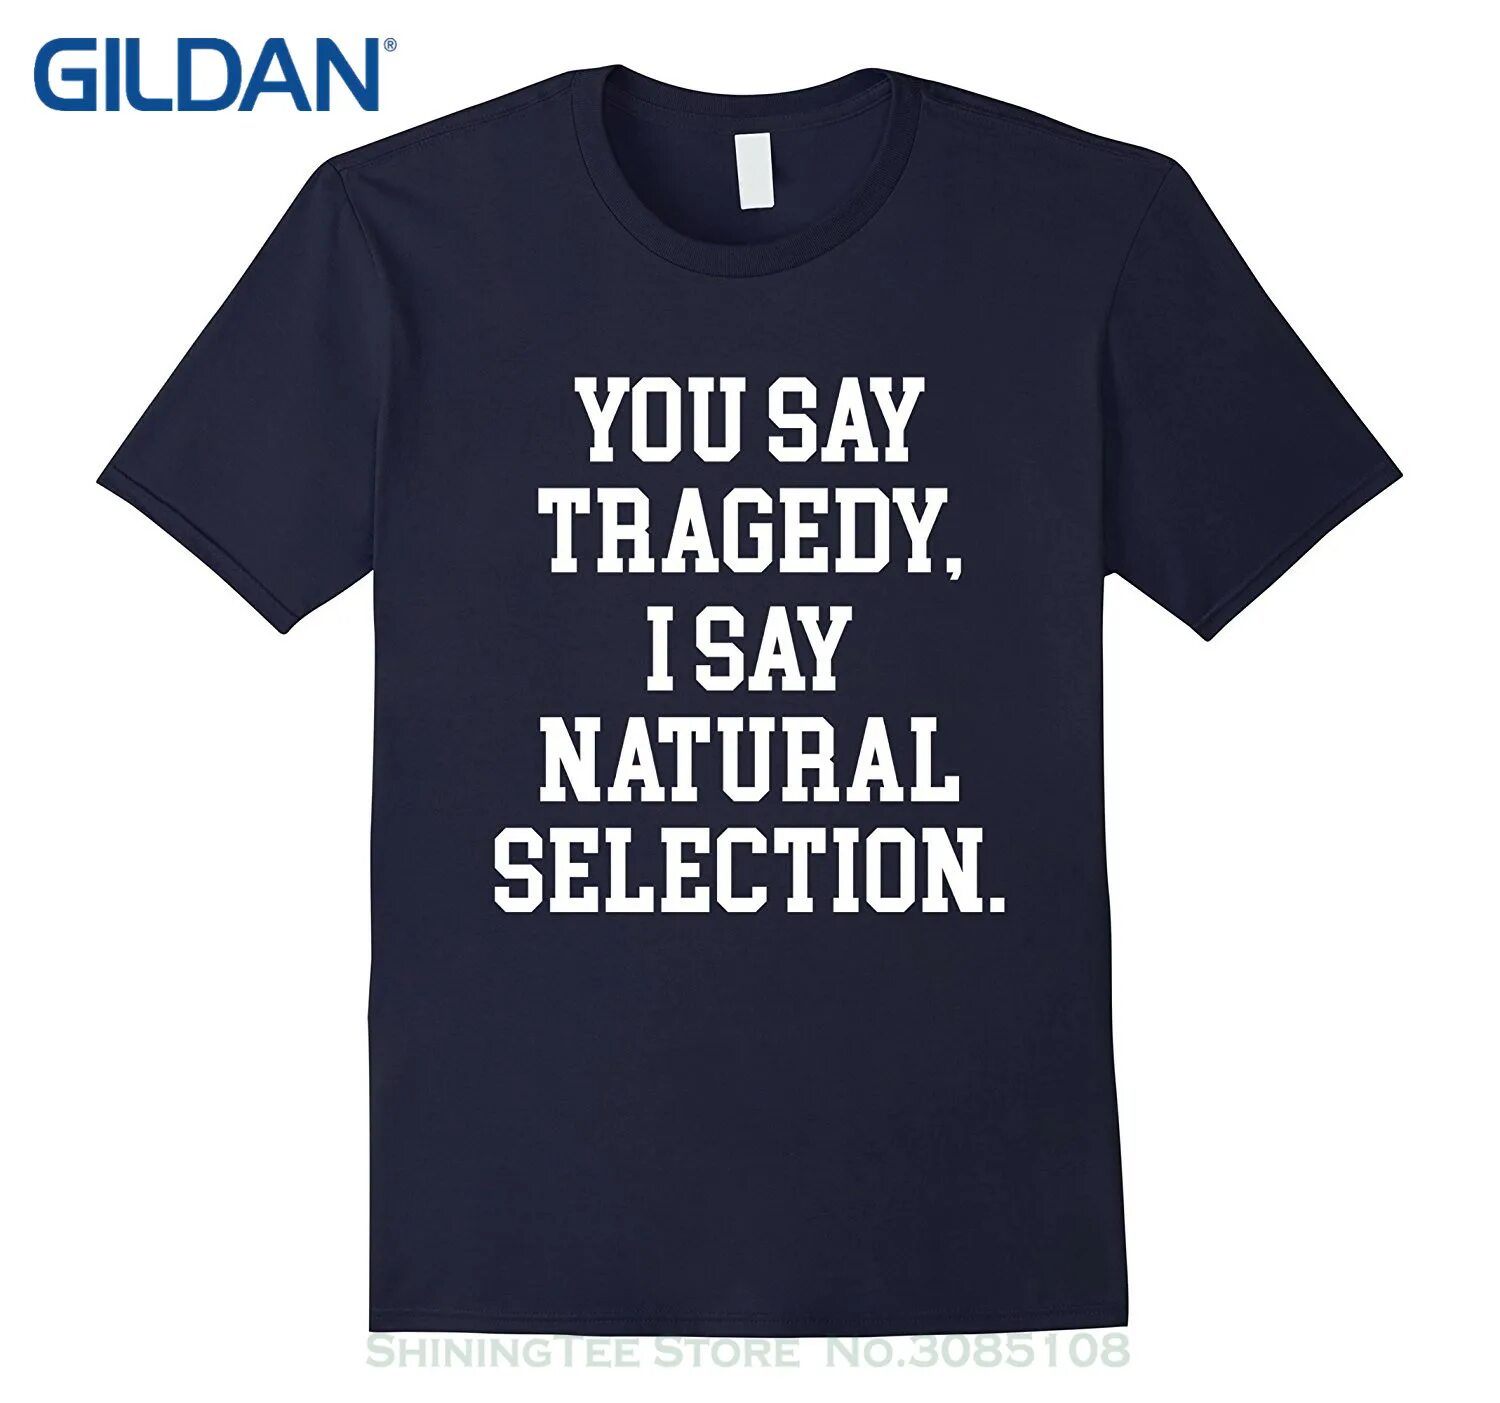 Natural say. Футболка natural selection. You said Oil футболка. Natural selection футболка купить на валберис. You say Tragedy im say natural selection.